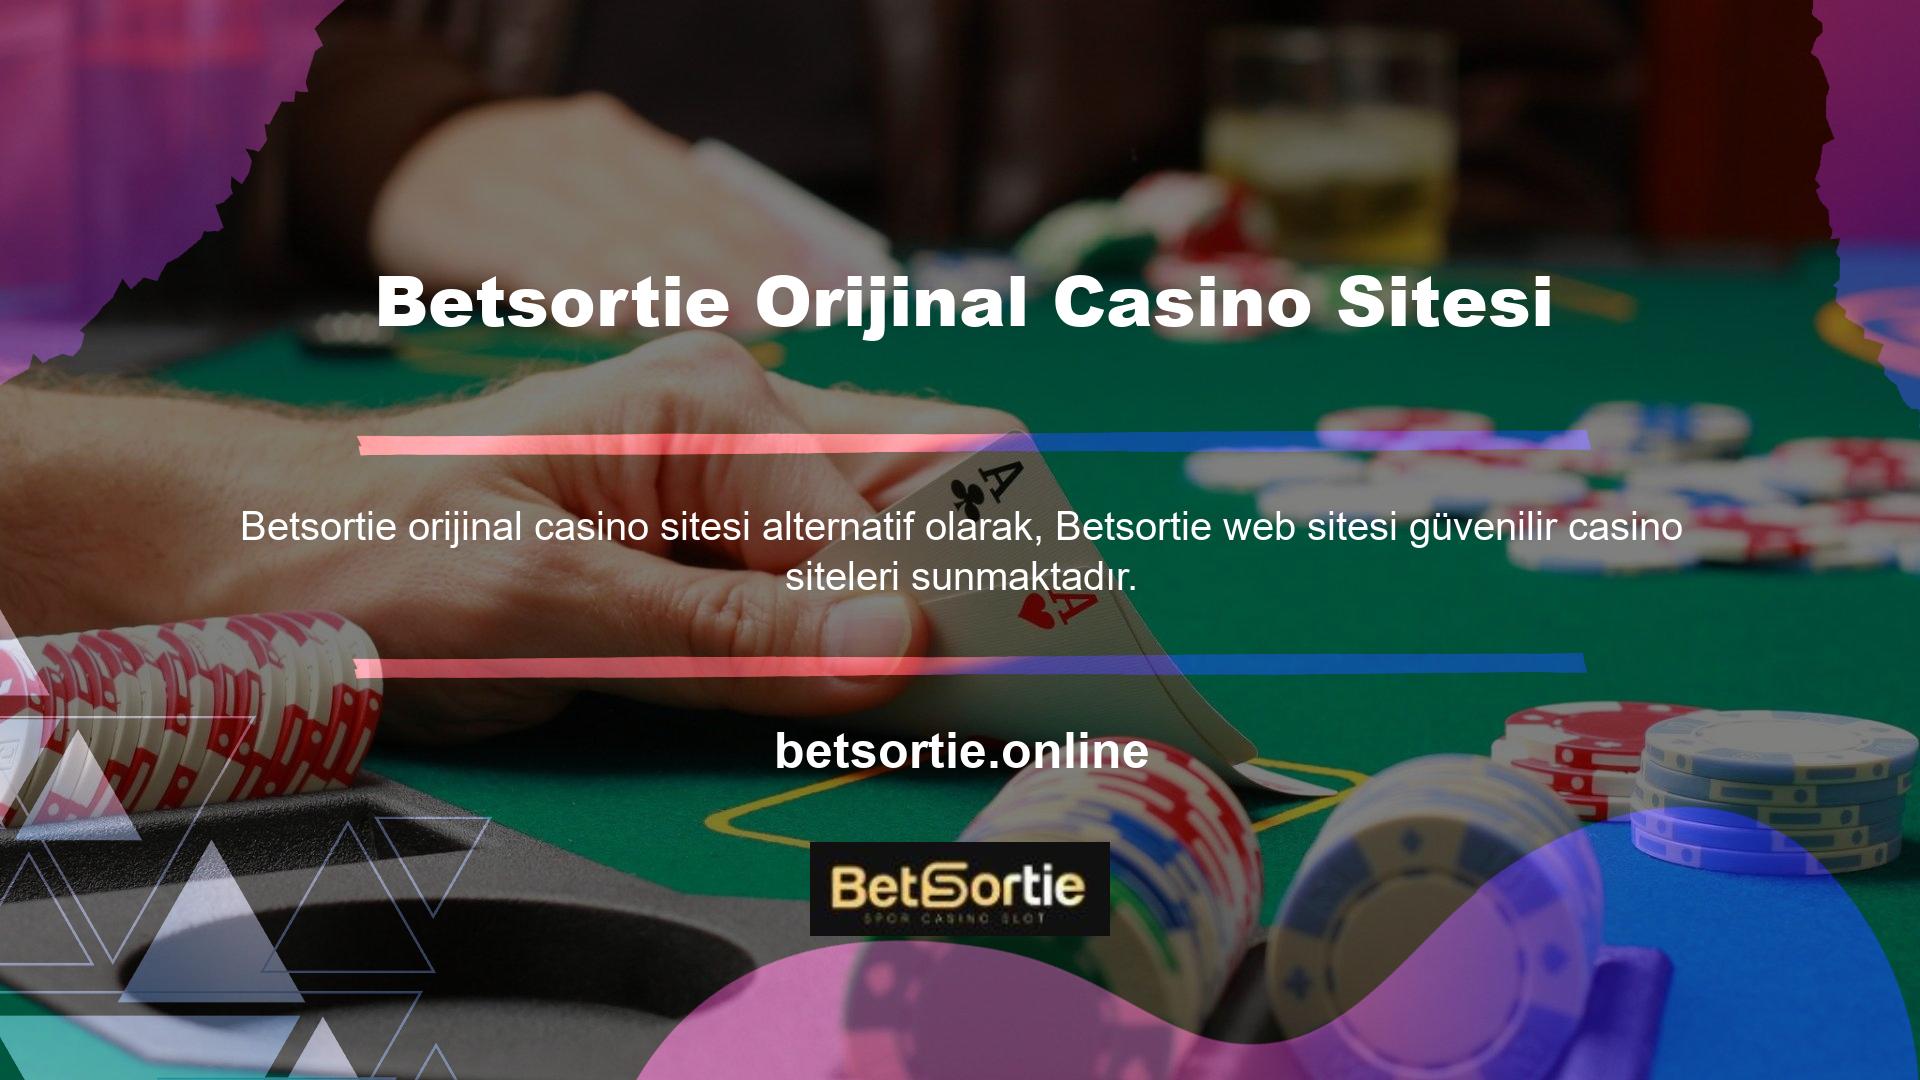 Sistem, casino turnuvalarını, video poker eğlencesini, jackpot slotlarını ve klasik slotları içerir